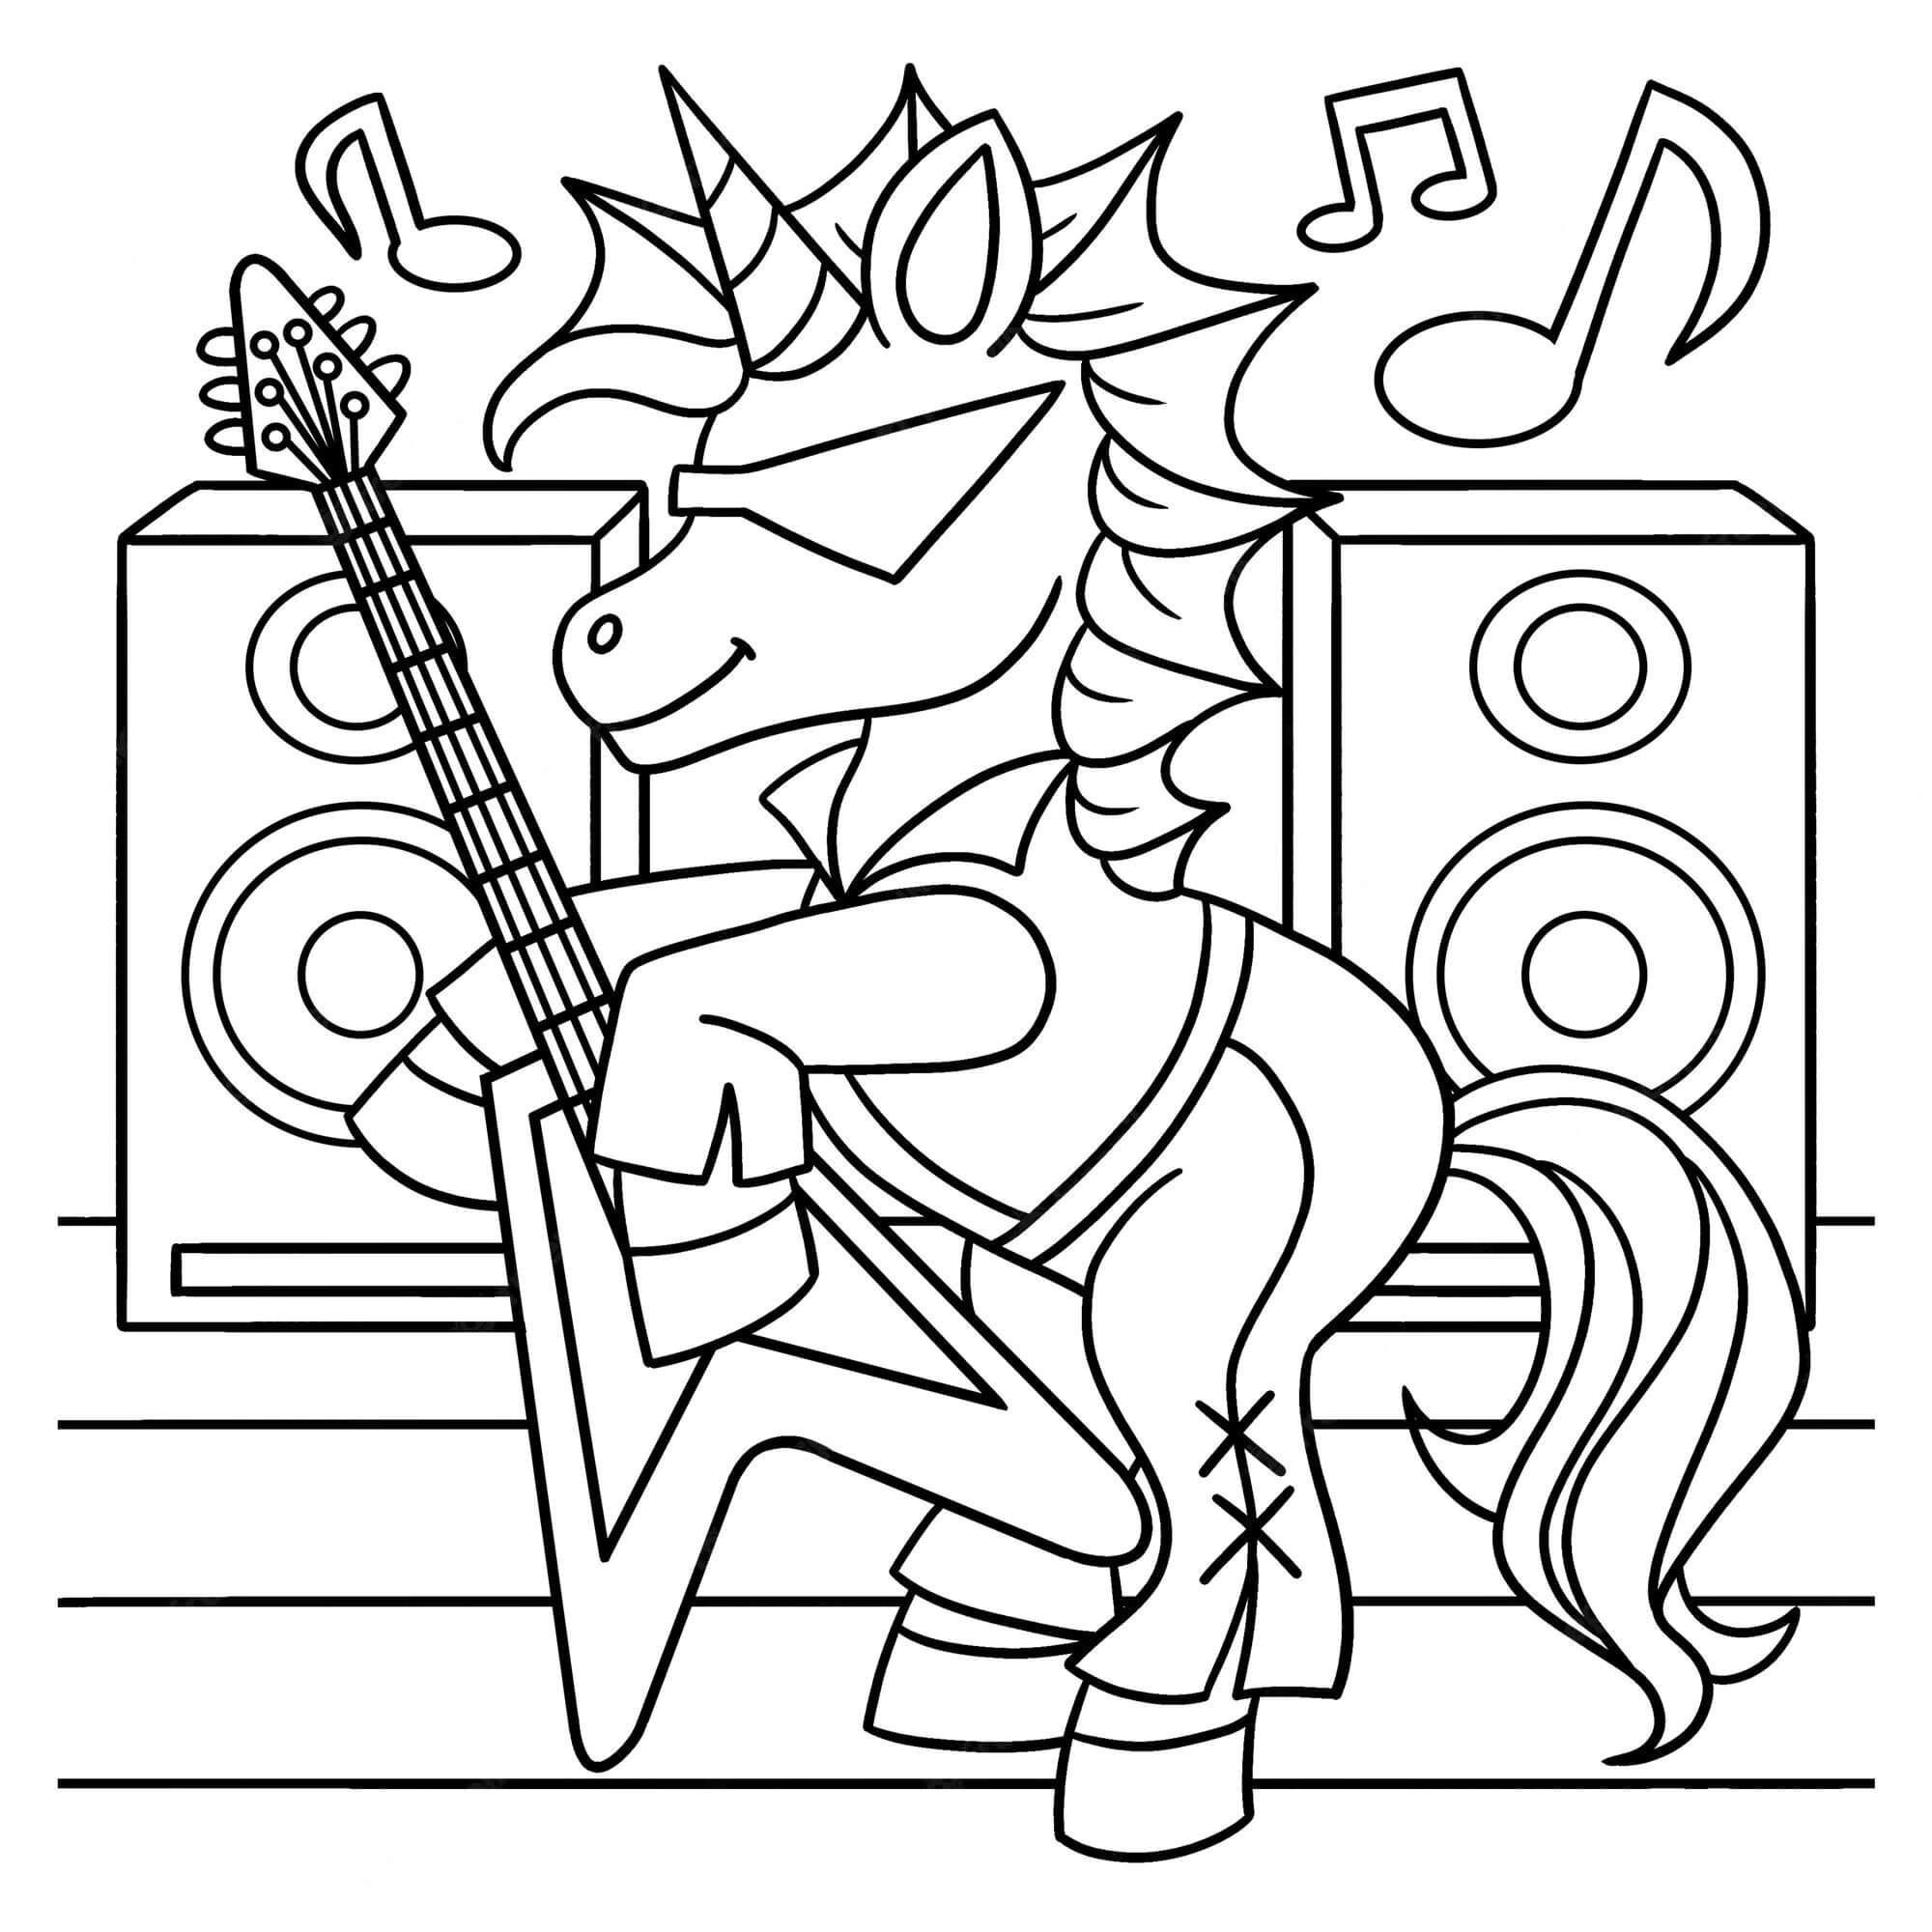 Une Licorne Joue de la Guitare coloring page